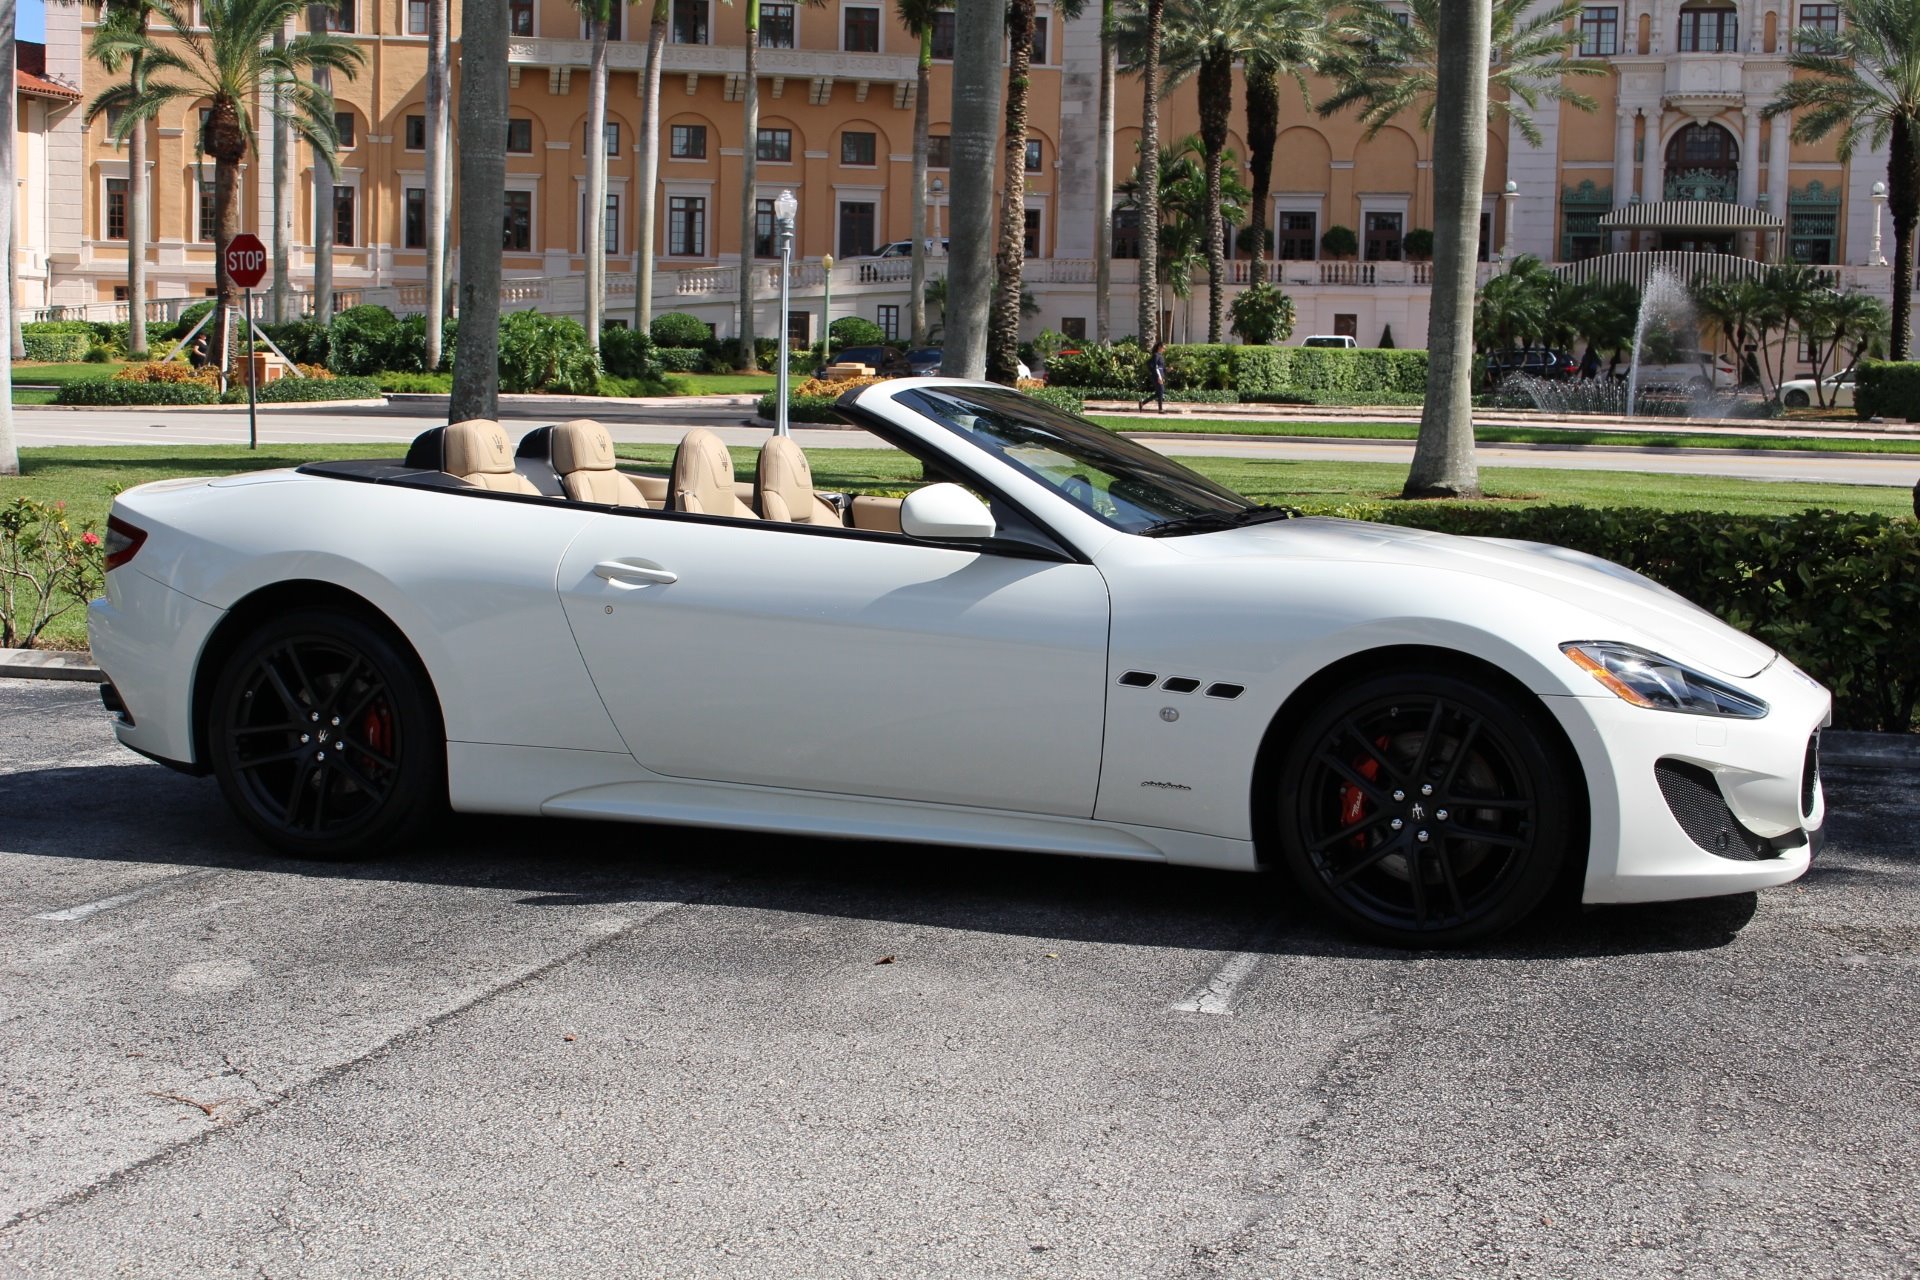 Used 2015 Maserati GranTurismo MC Centennial for sale Sold at The Gables Sports Cars in Miami FL 33146 3